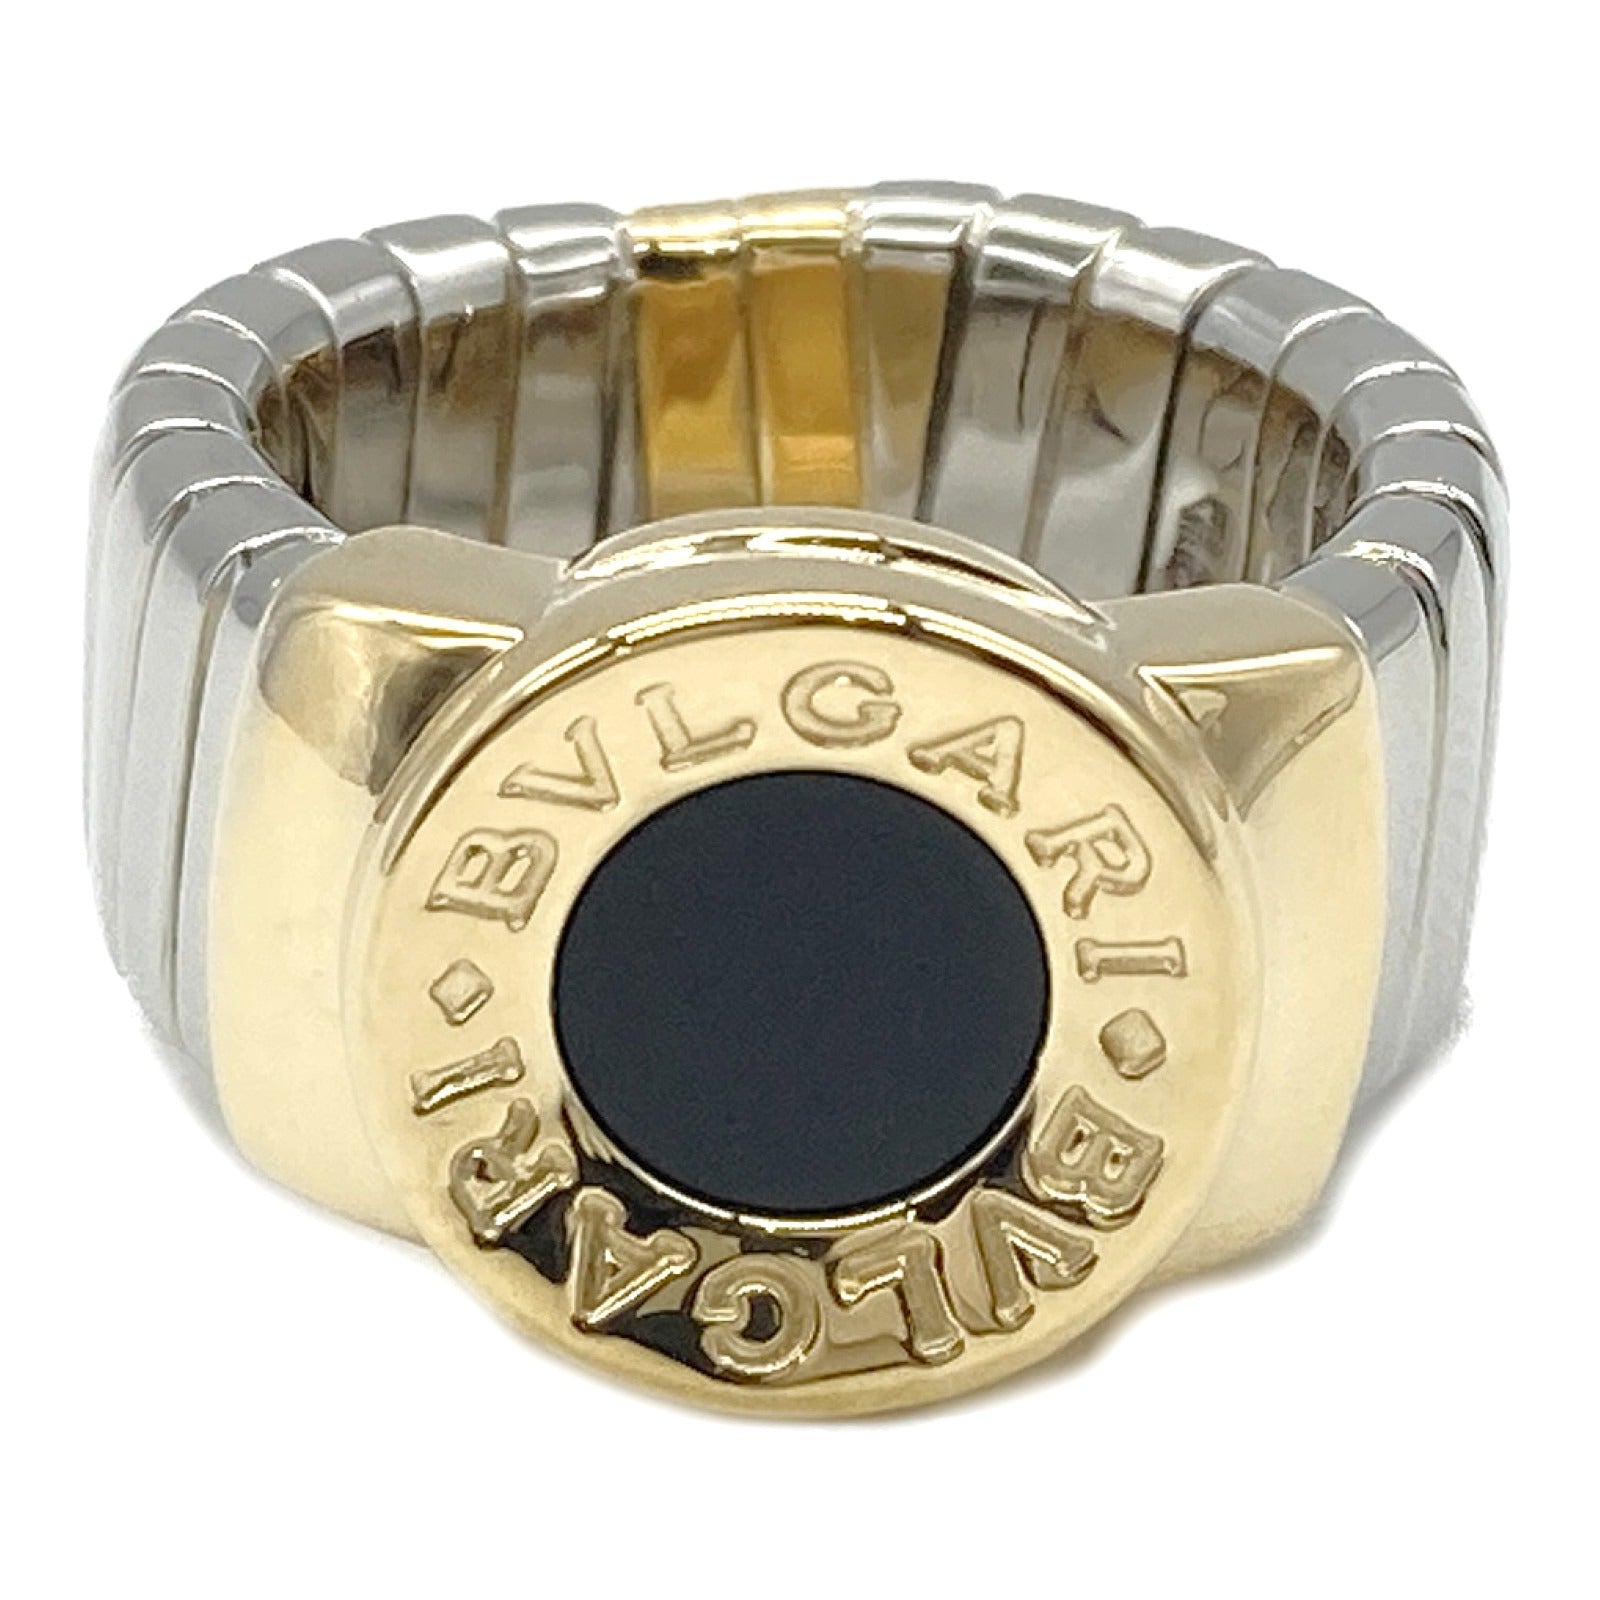 Bulgaris BVLGARI ns Tubegas Onix Ring Ring Ring Ring Jewelry K18 (Yellow G) Stainless Steel Onix   Black Close-up